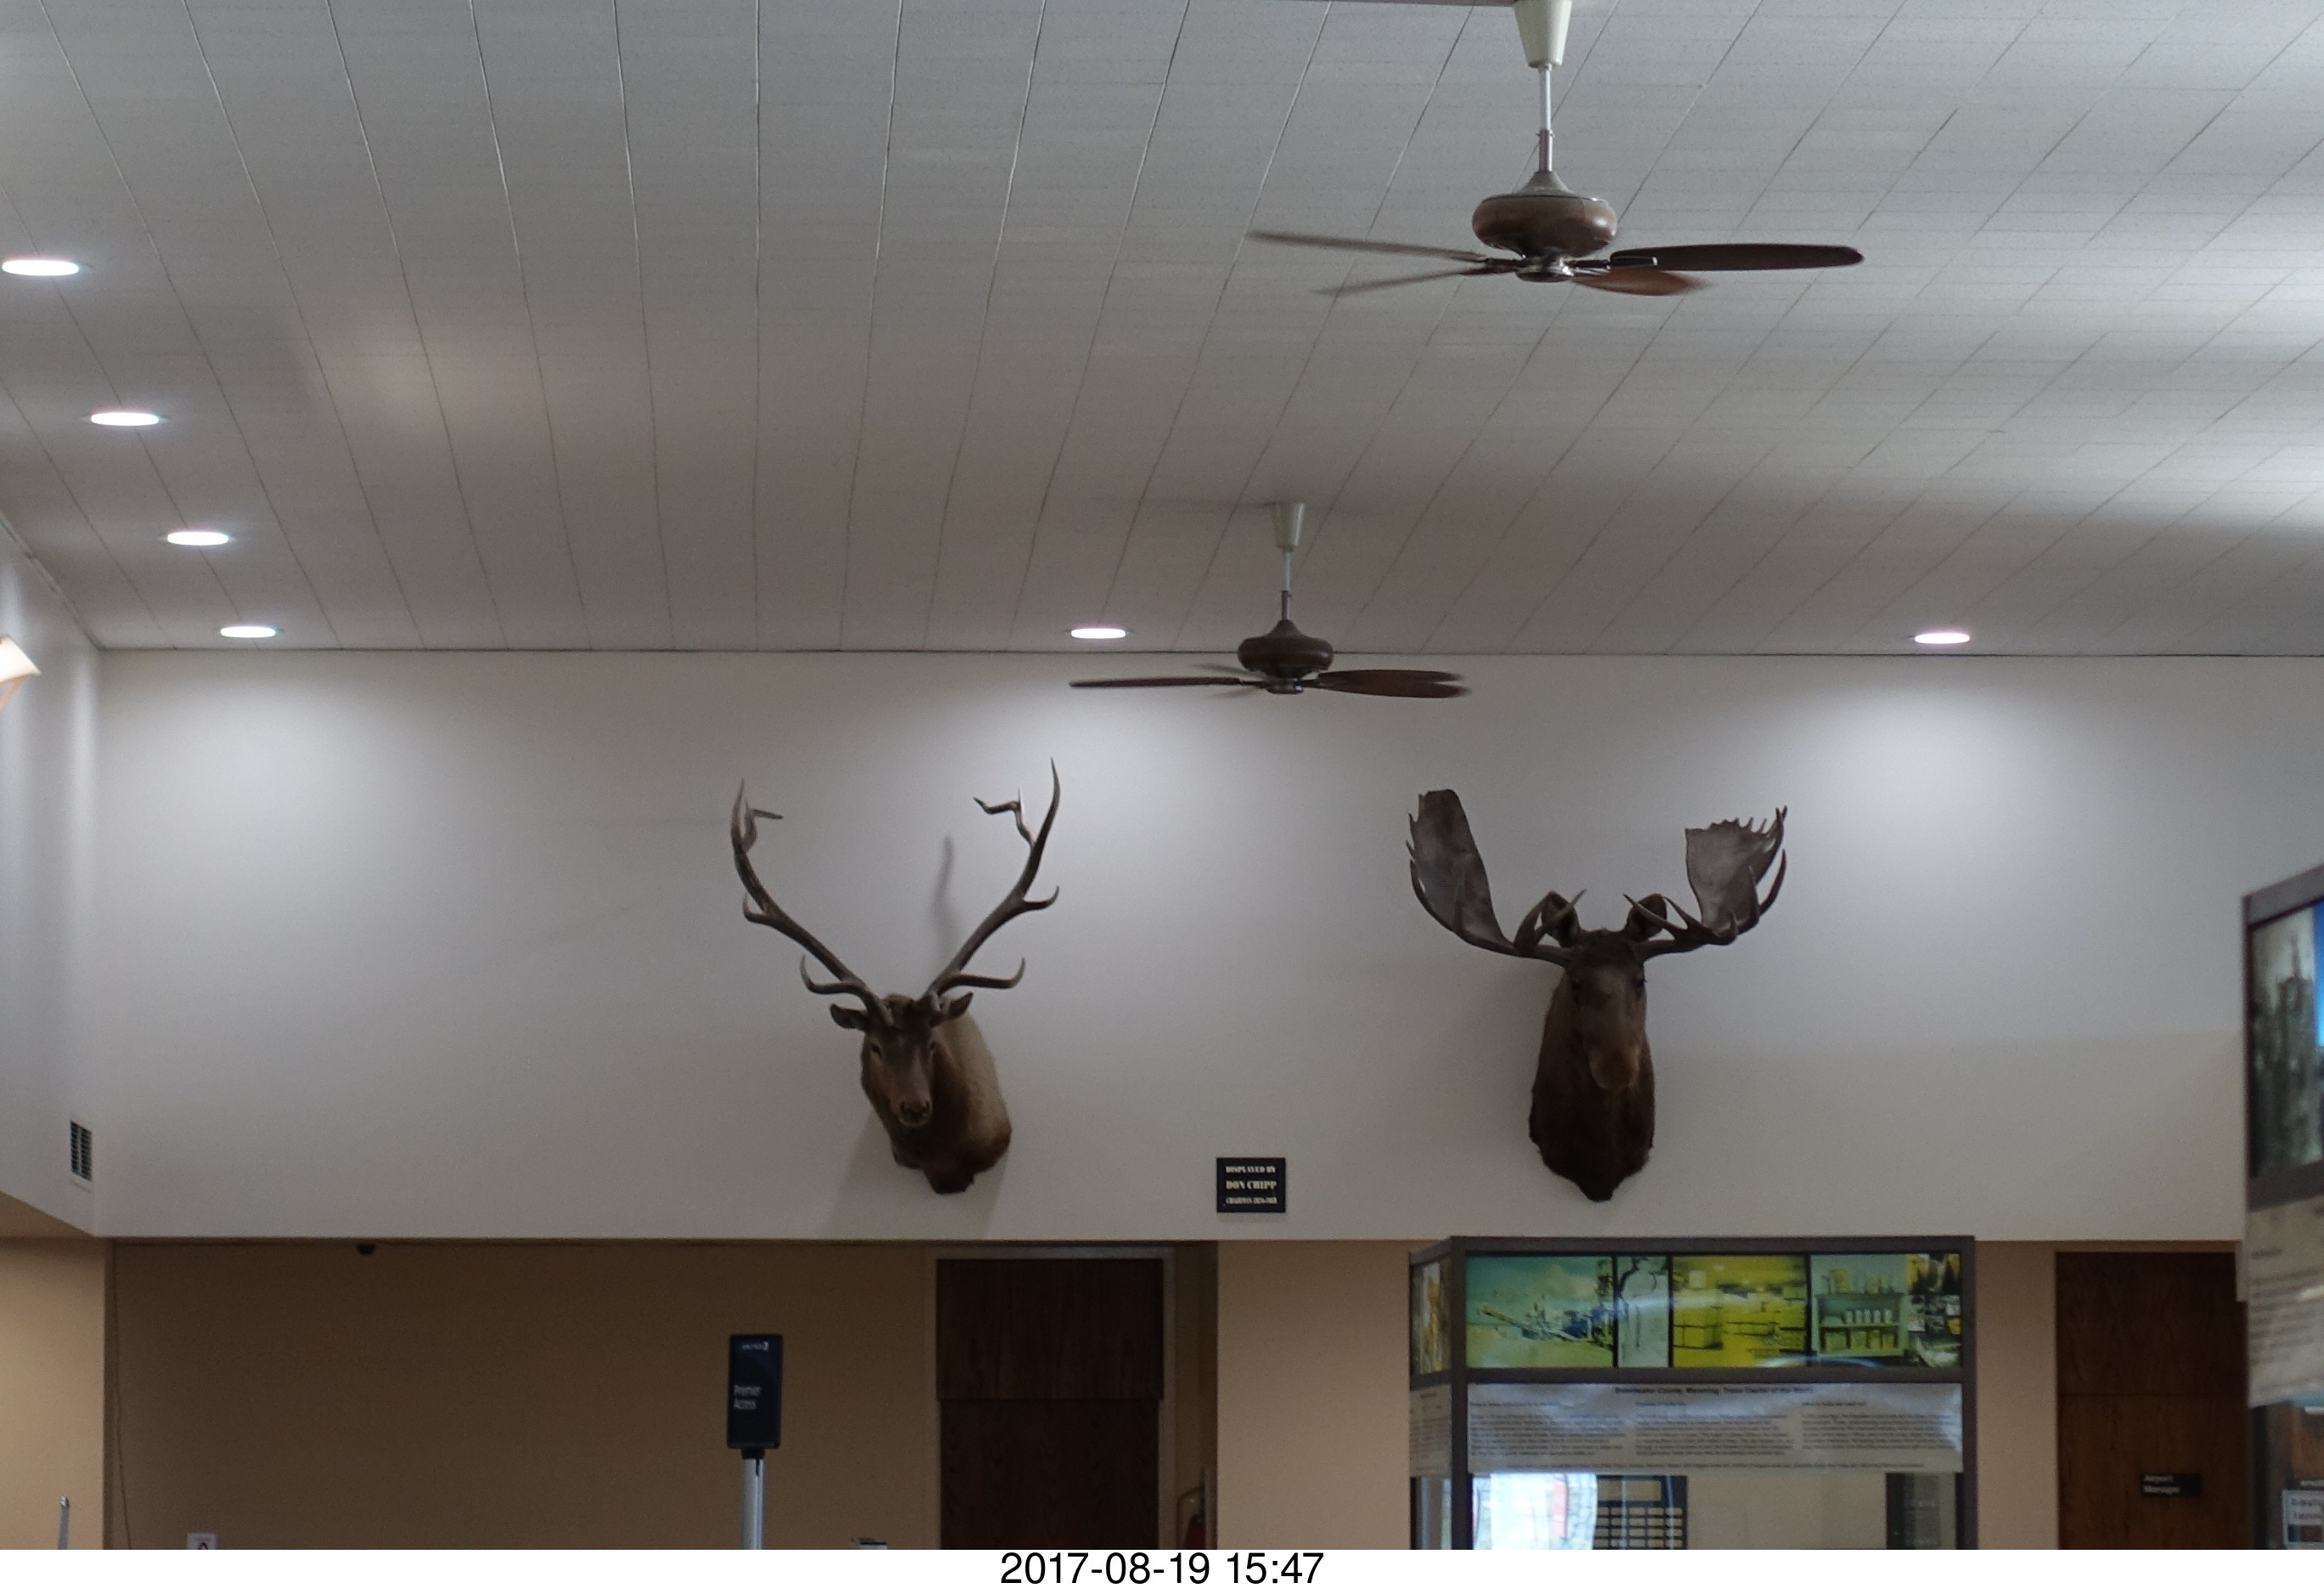 Rock Springs airport terminal - elk and moose heads